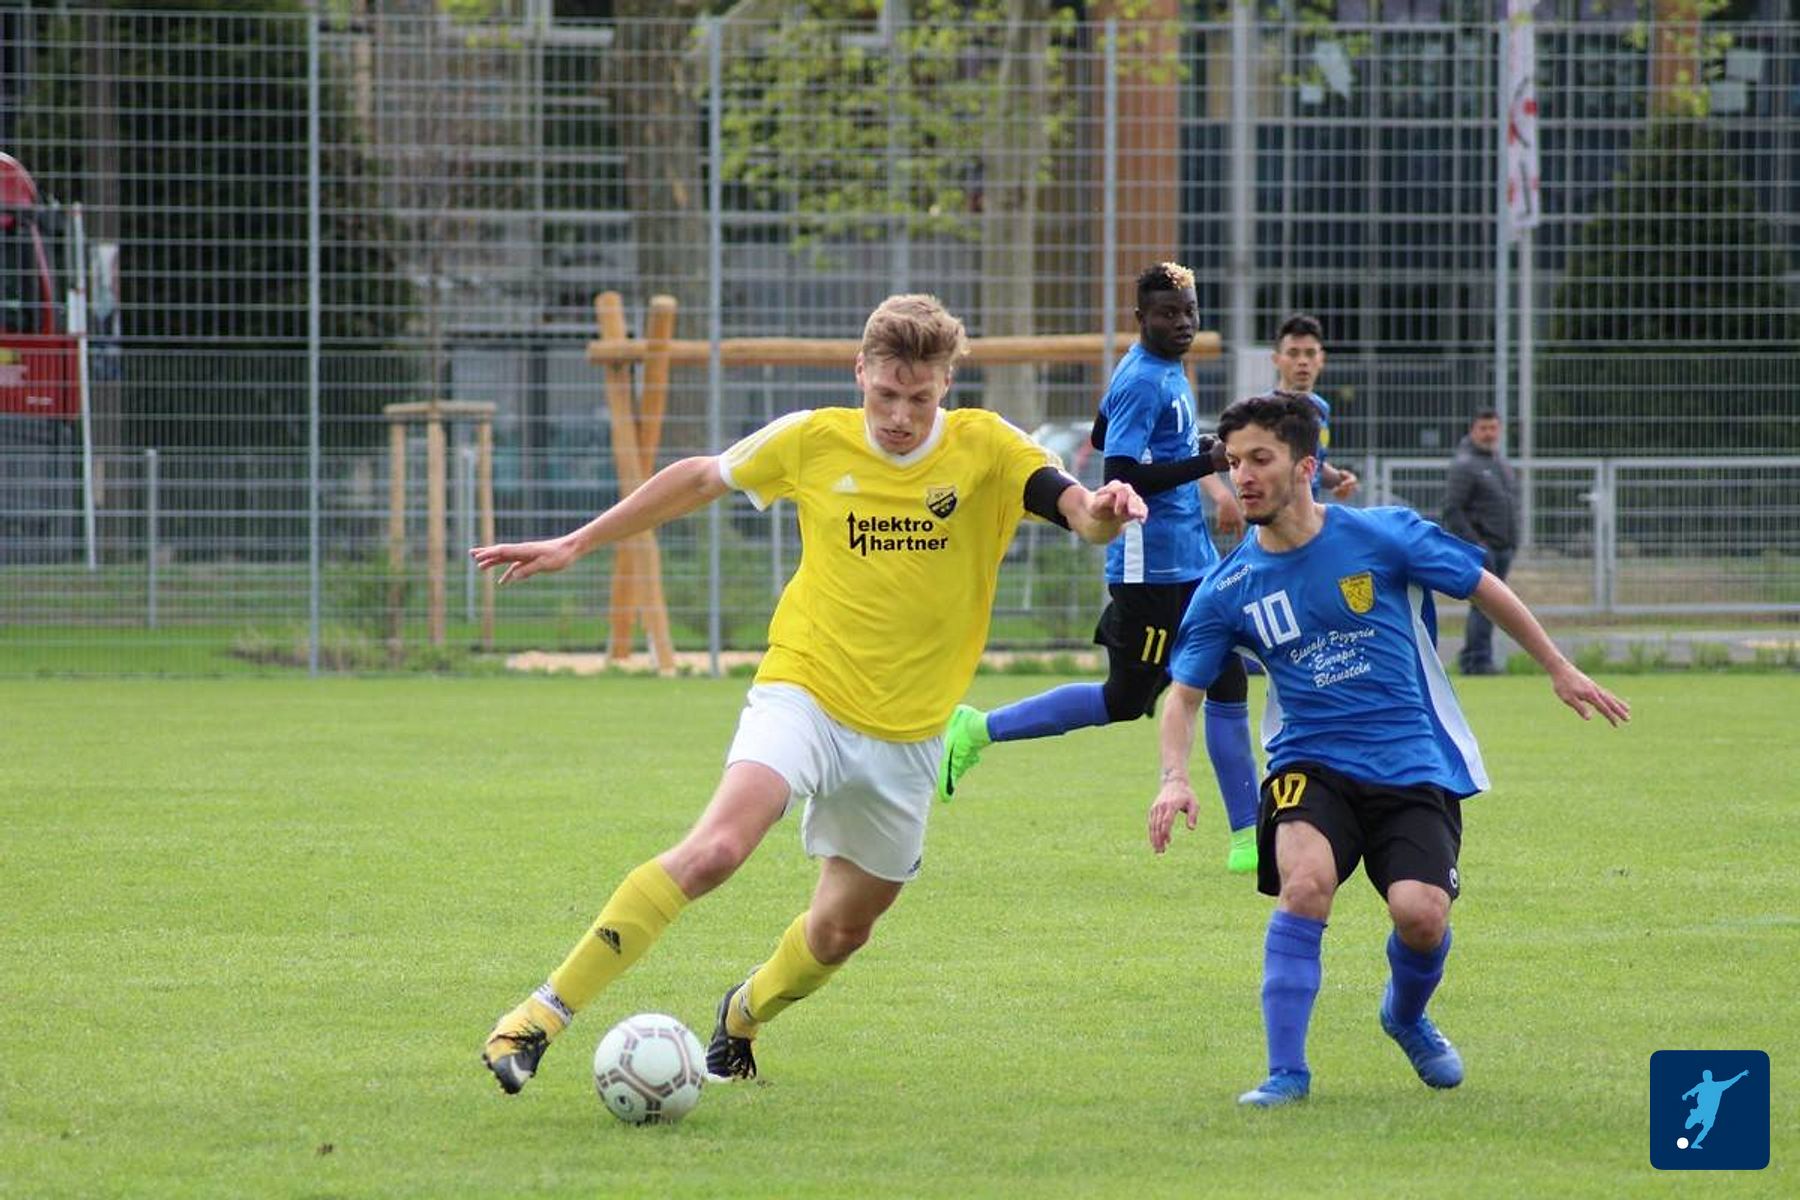   SV Esperia Italia Neu-Ulm - SV Beuren II am 12.05.2019   